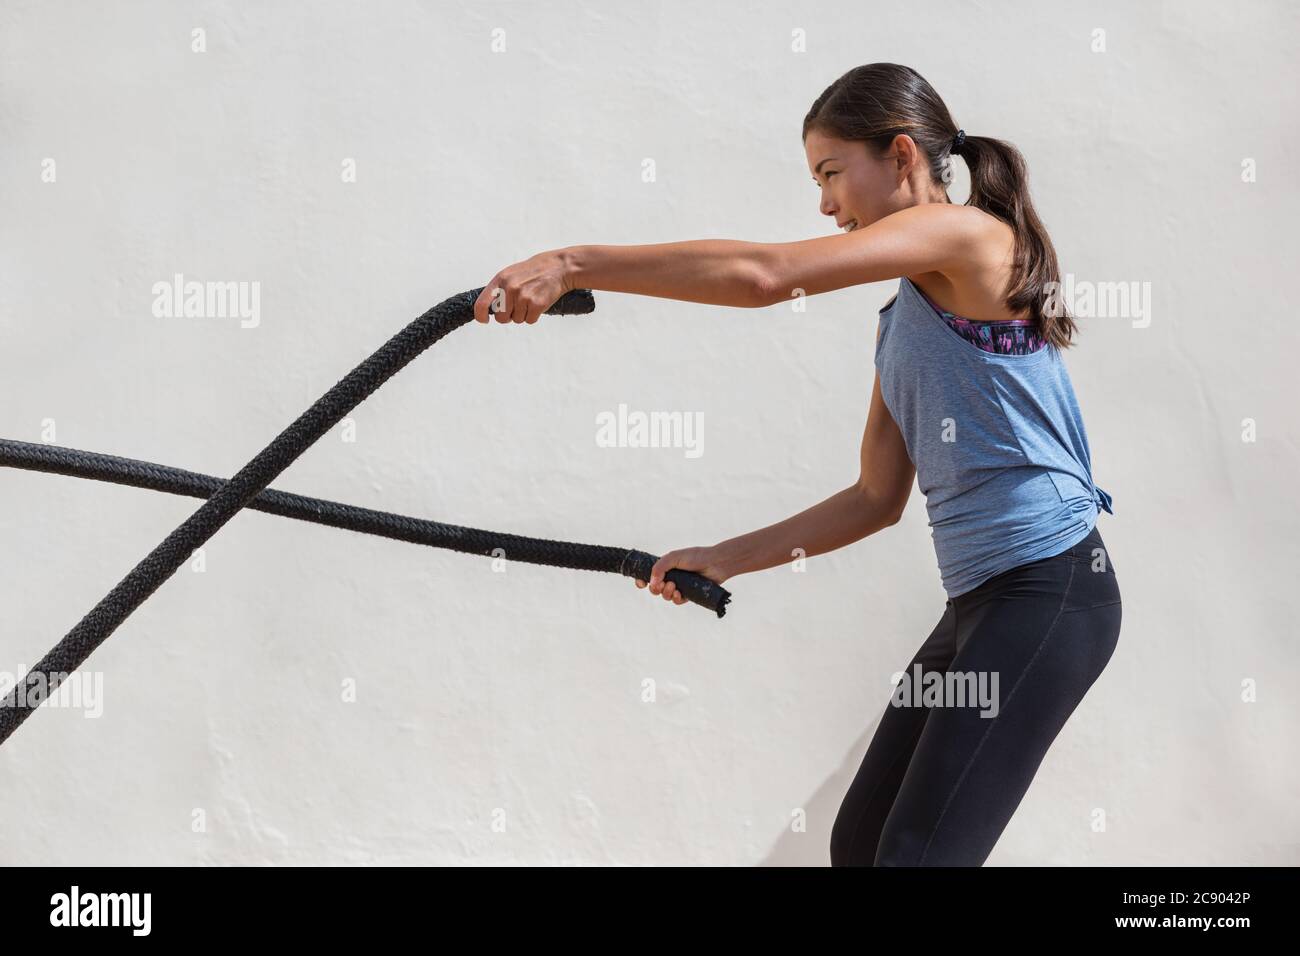 Fitness Frau Training Kampf Seile Training im Fitnessstudio. Mädchen trainieren Arme und Cardio mit Kampfseil für Cross-Fit-Übungen Stockfoto